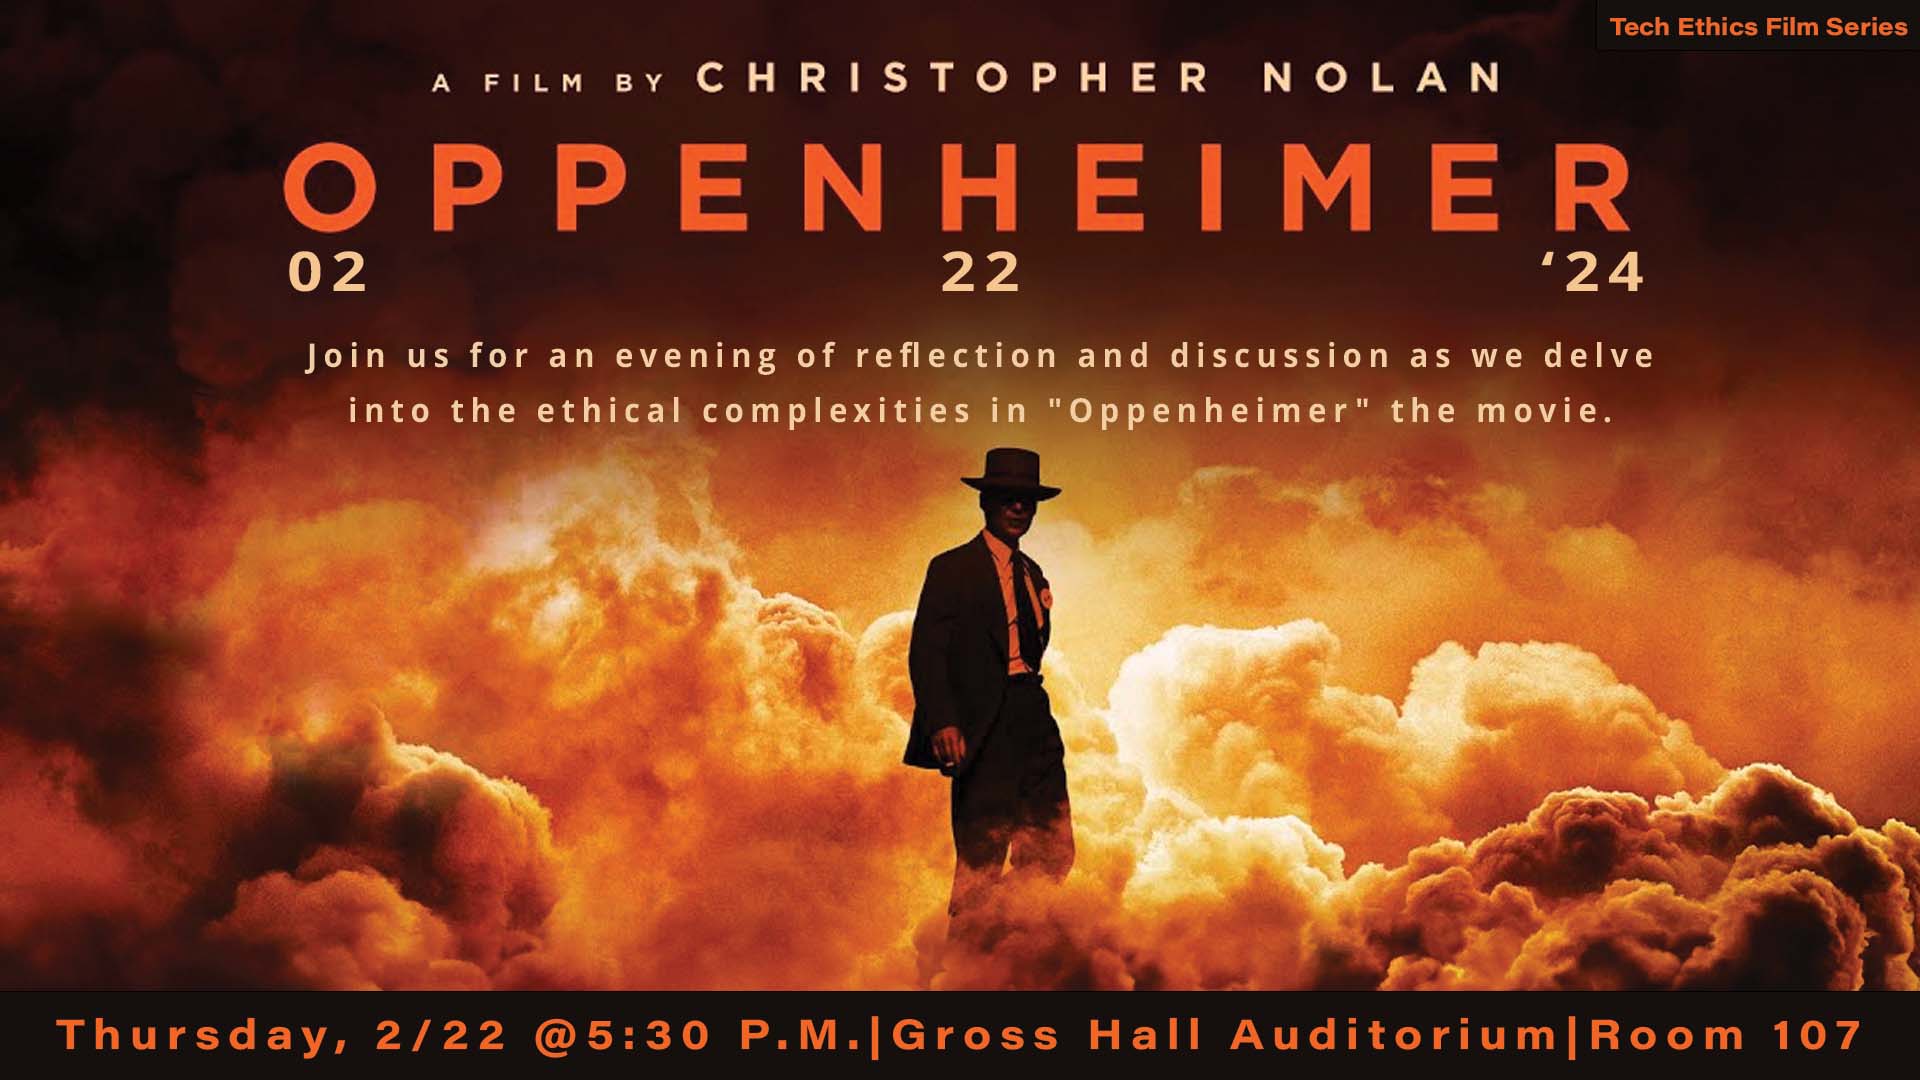 Oppenheimer Thursday @5:30 p.m.